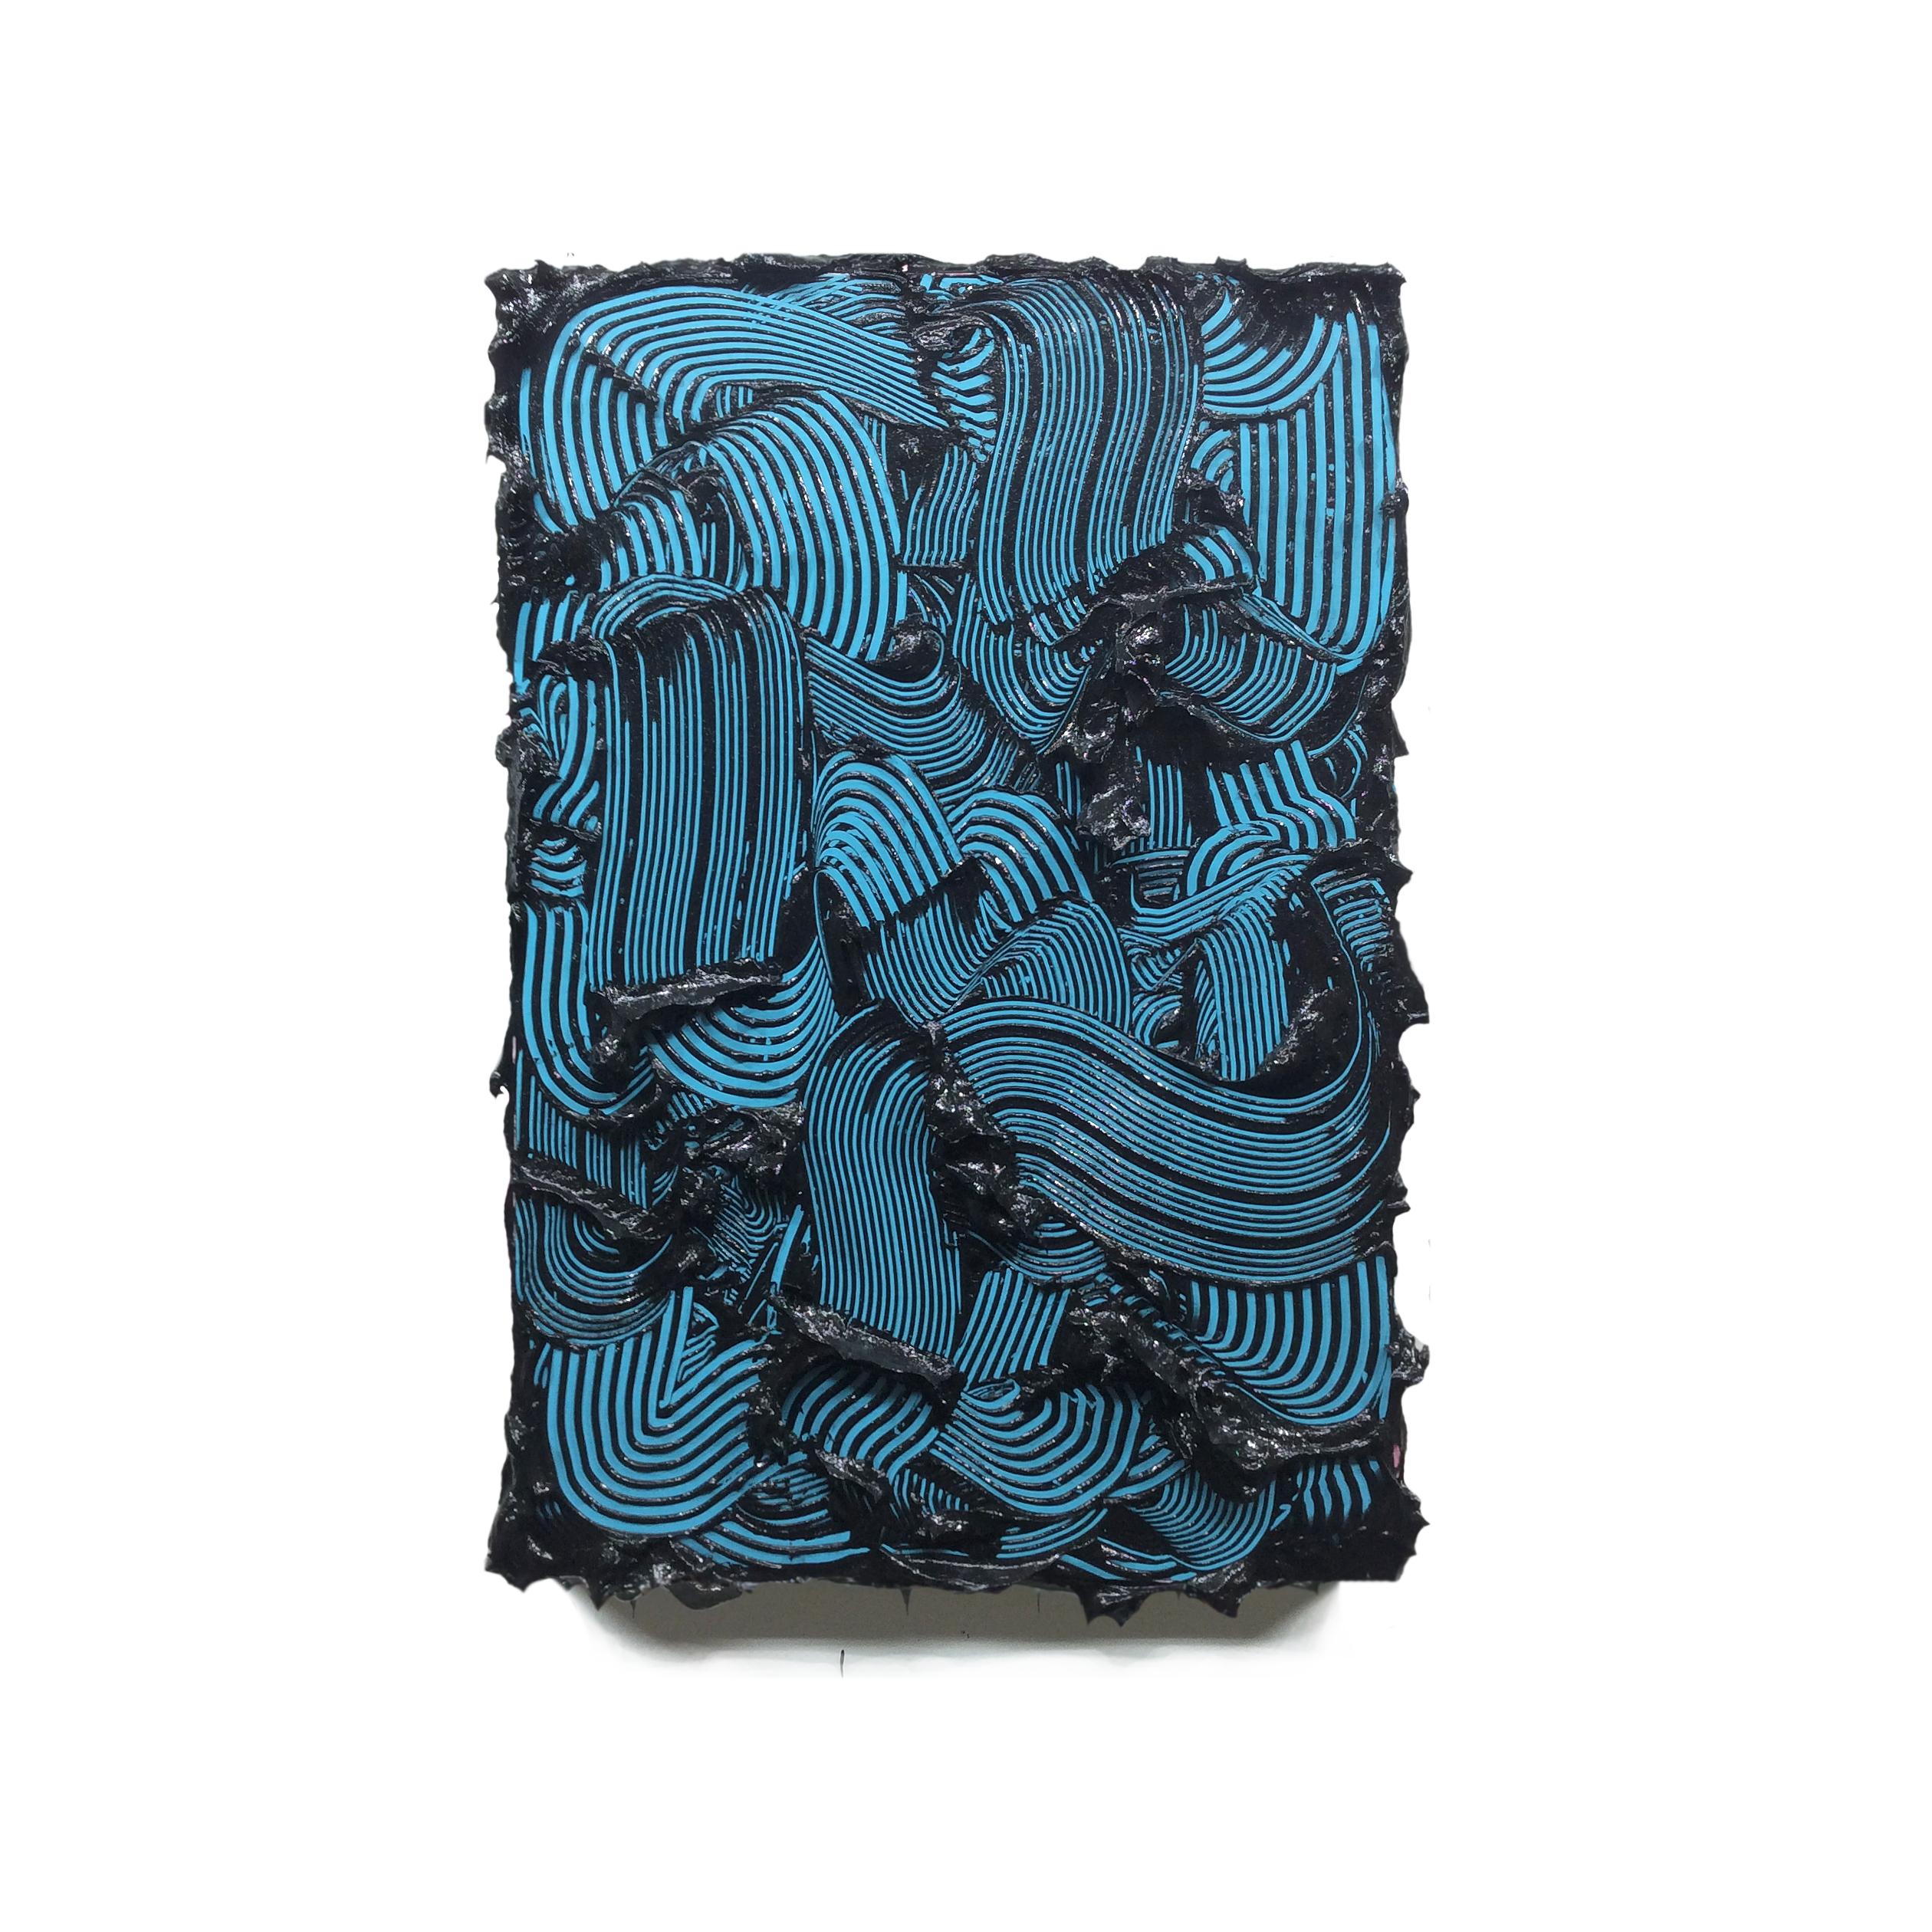 Poseidon - strukturiertes zeitgenössisches Gemälde, farbenfrohe, blaue Striche, abstrakt – Sculpture von Tim Nikiforuk